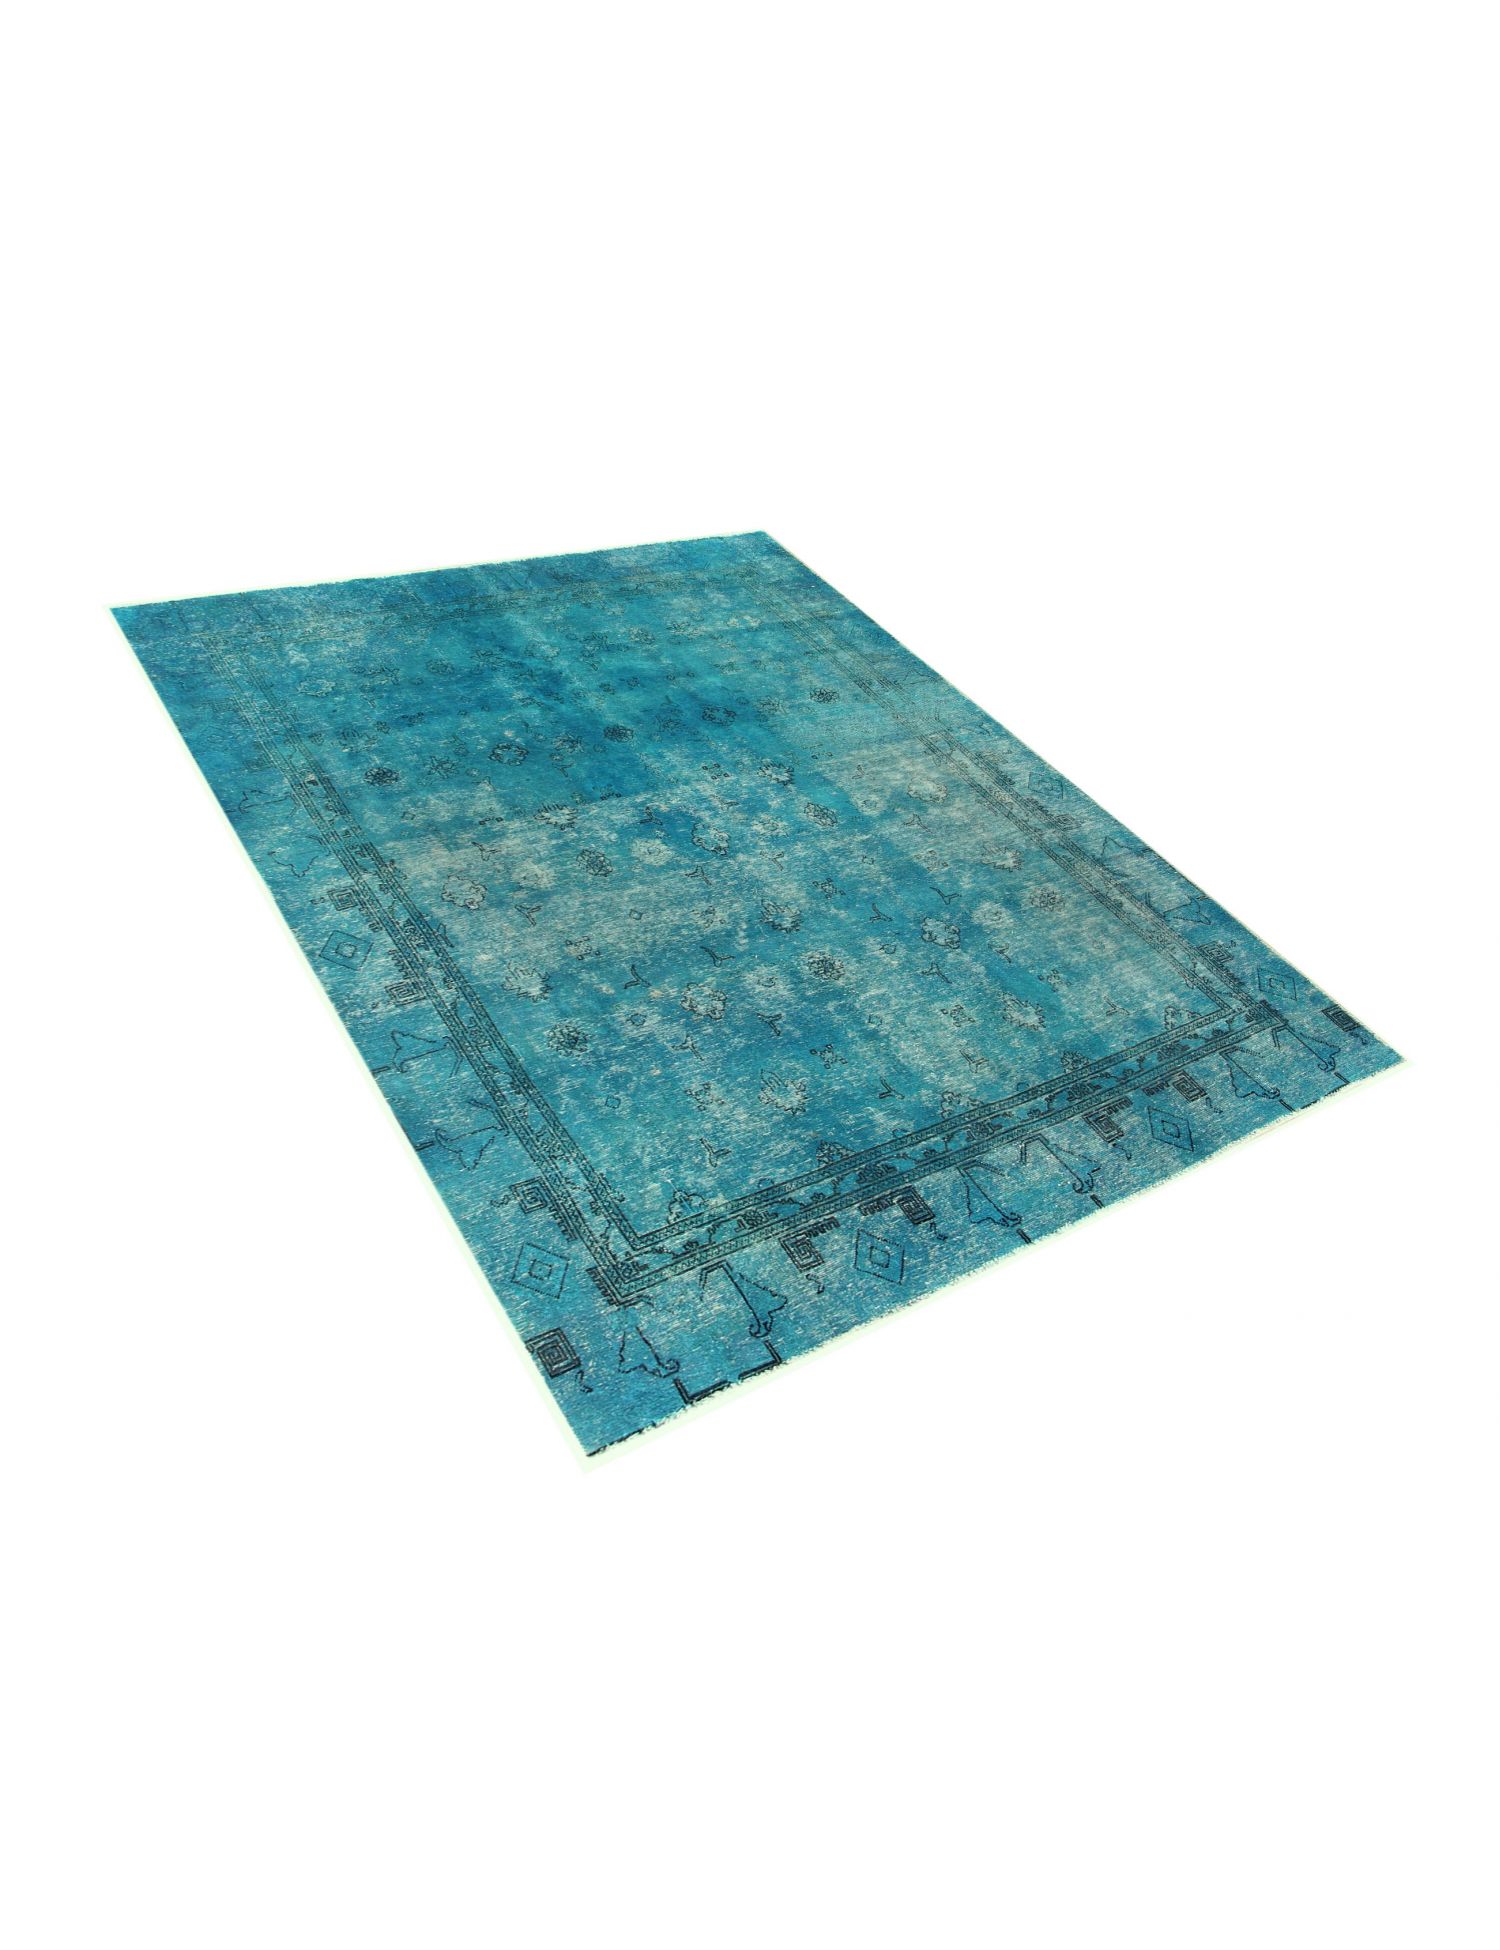 Persischer vintage teppich  türkis <br/>300 x 220 cm